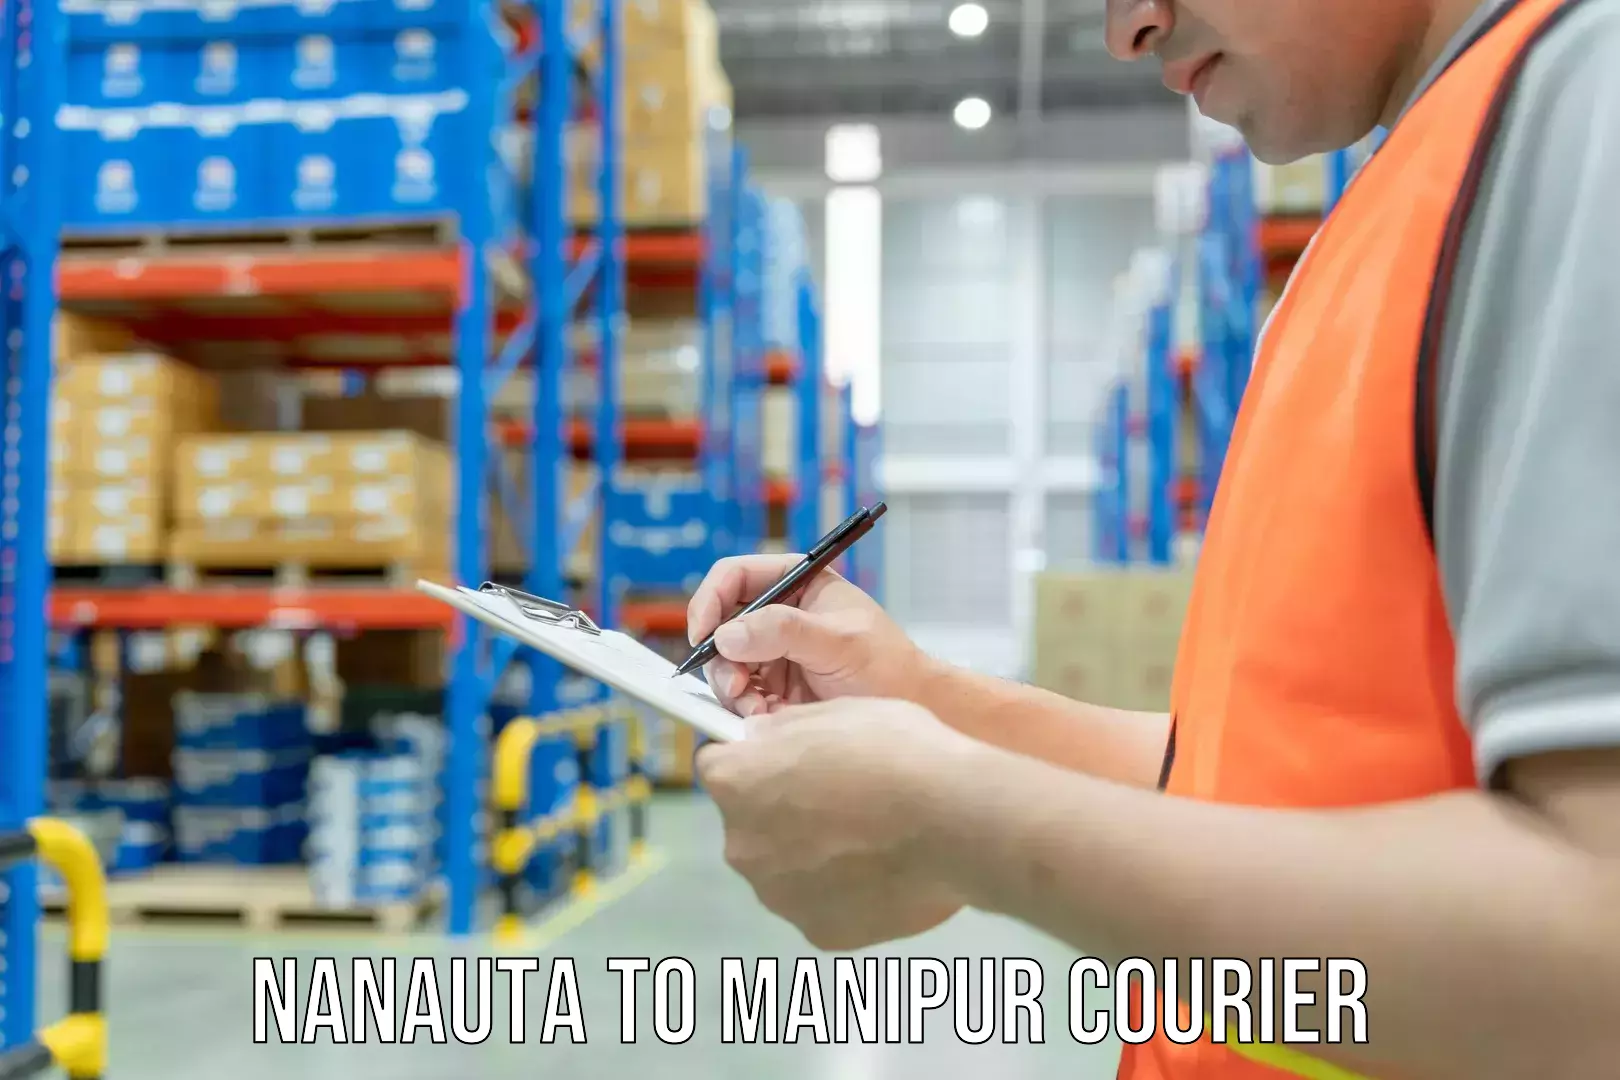 Expert furniture transport Nanauta to Manipur